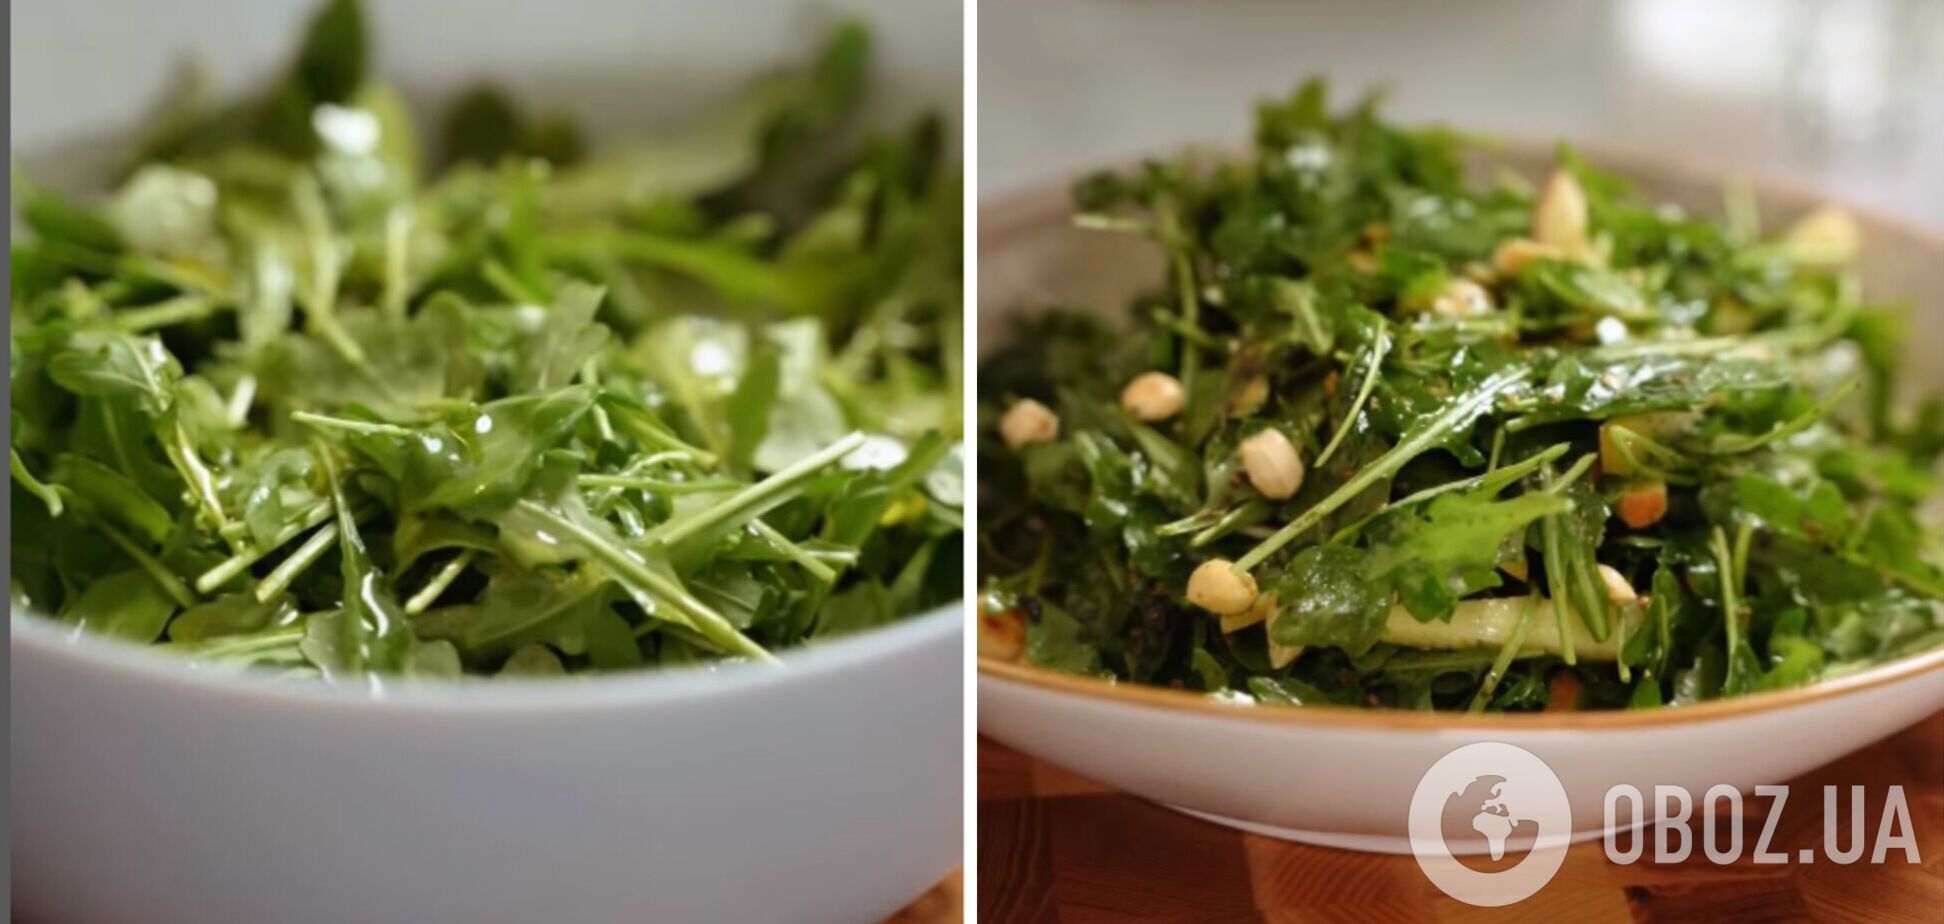 Питательный весенний салат: вкусно, сочно и очень просто